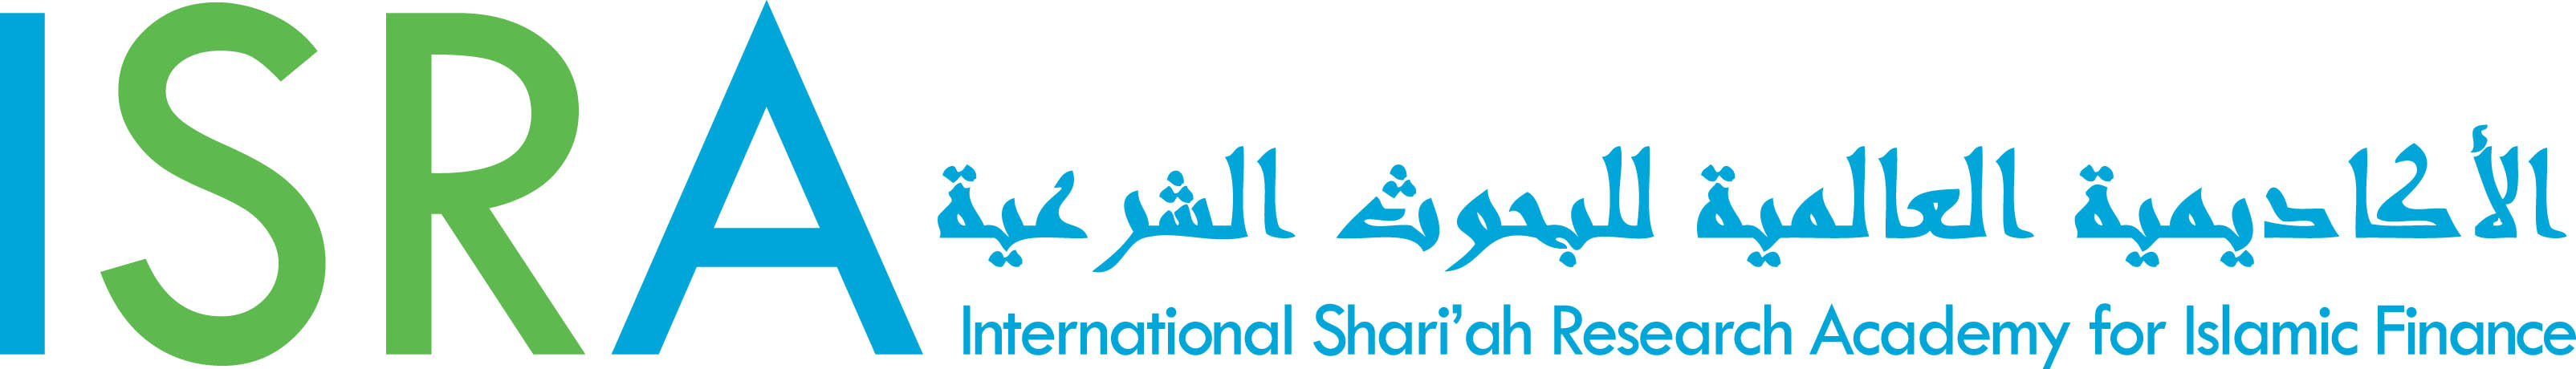 Международная Шариатская Исследовательская Академия по Исламским Финансам (ISRA)